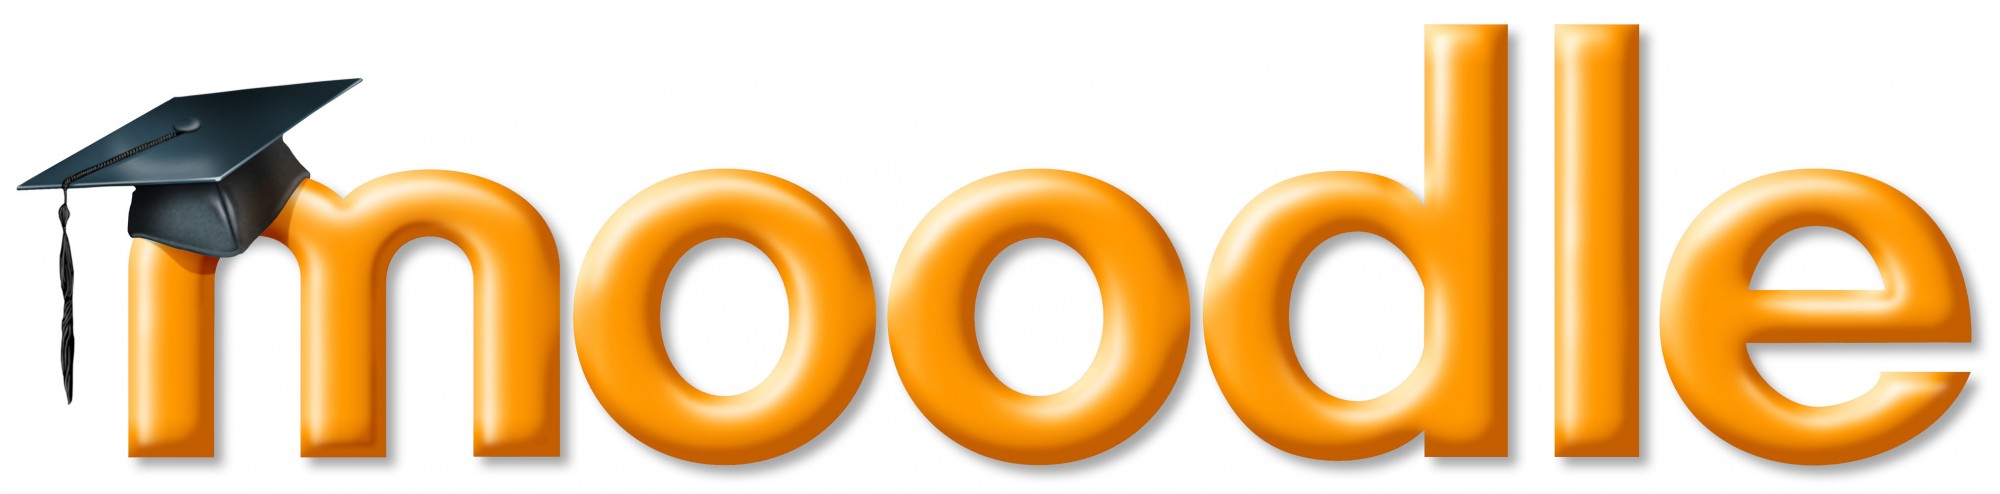 Moodle logo large